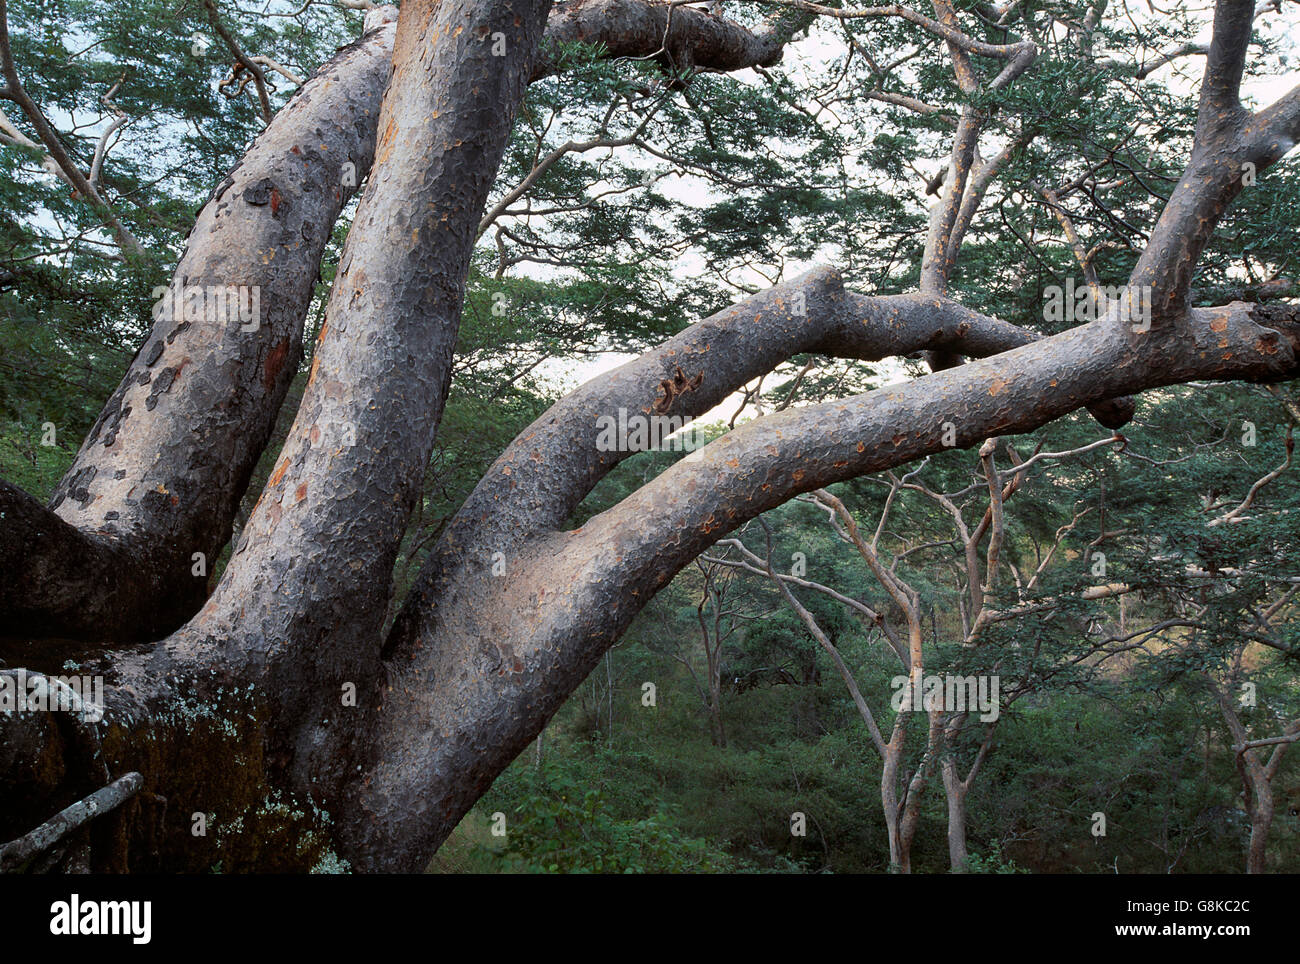 Acacia trees on mountain, Chizarira National Park, Zambia/Zimbabwe. Stock Photo